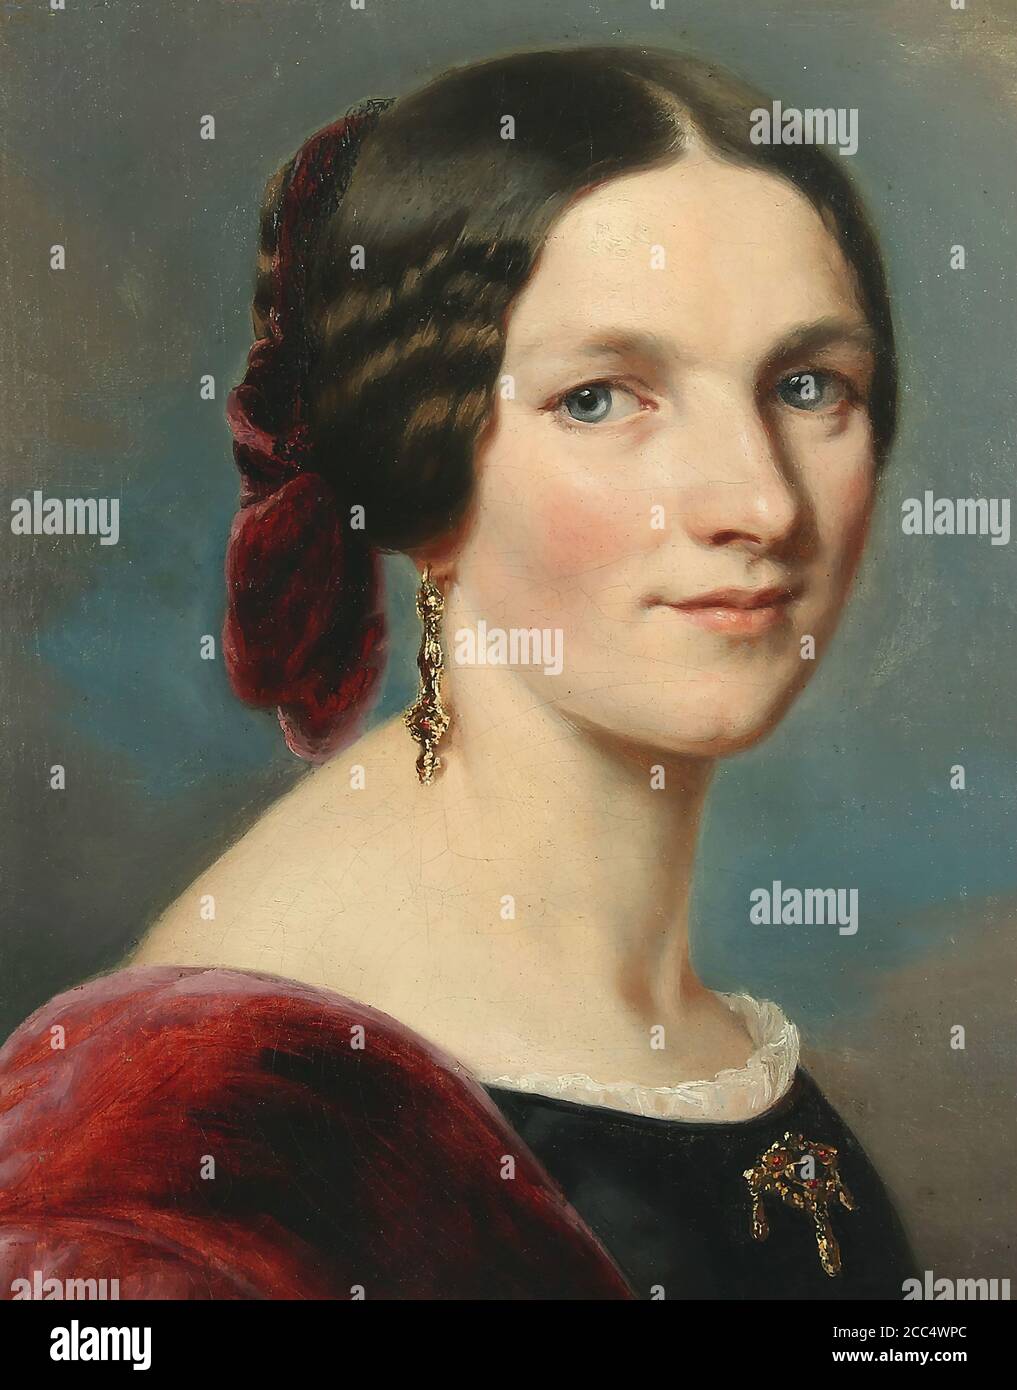 Winterhalter Franz Xavier - Portrait d'une Noble femme - École allemande - 19e siècle Banque D'Images